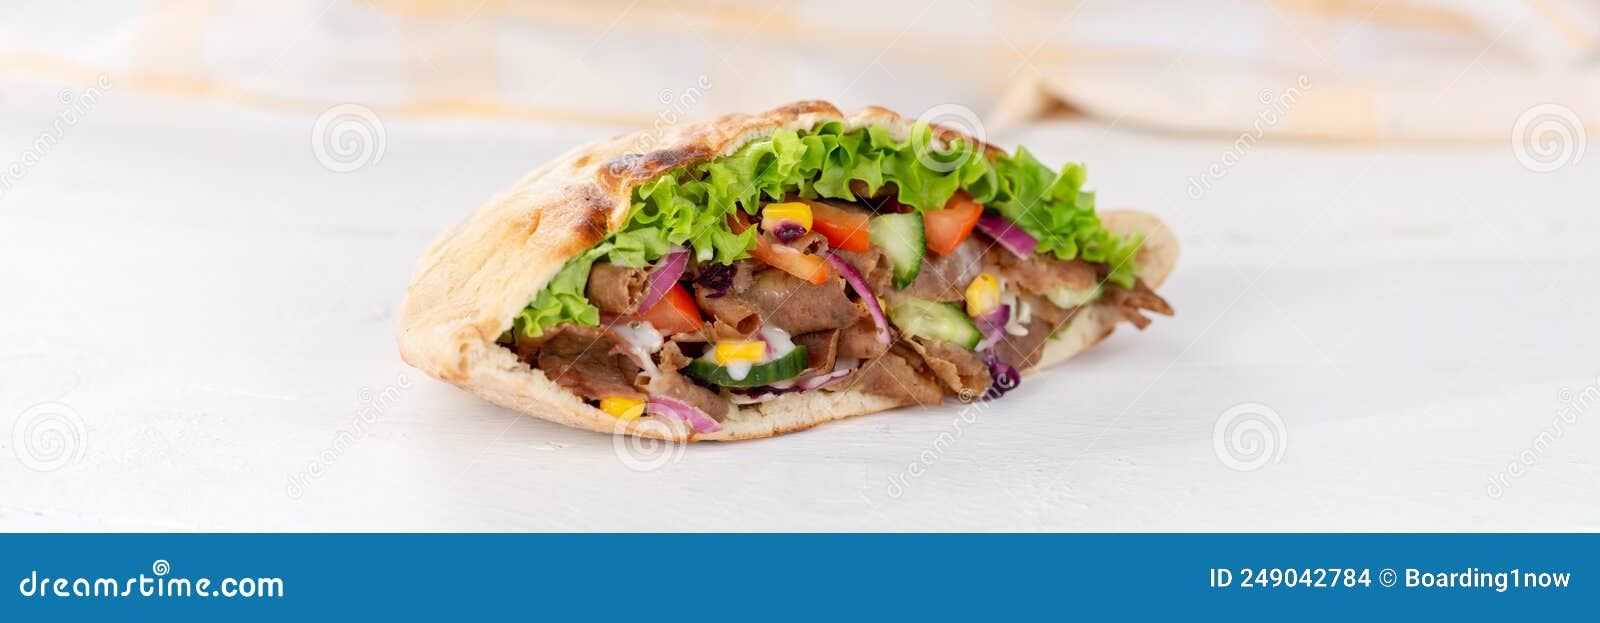 dÃÂ¶ner kebab doner kebap slice fast food in flatbread on a wooden board panorama